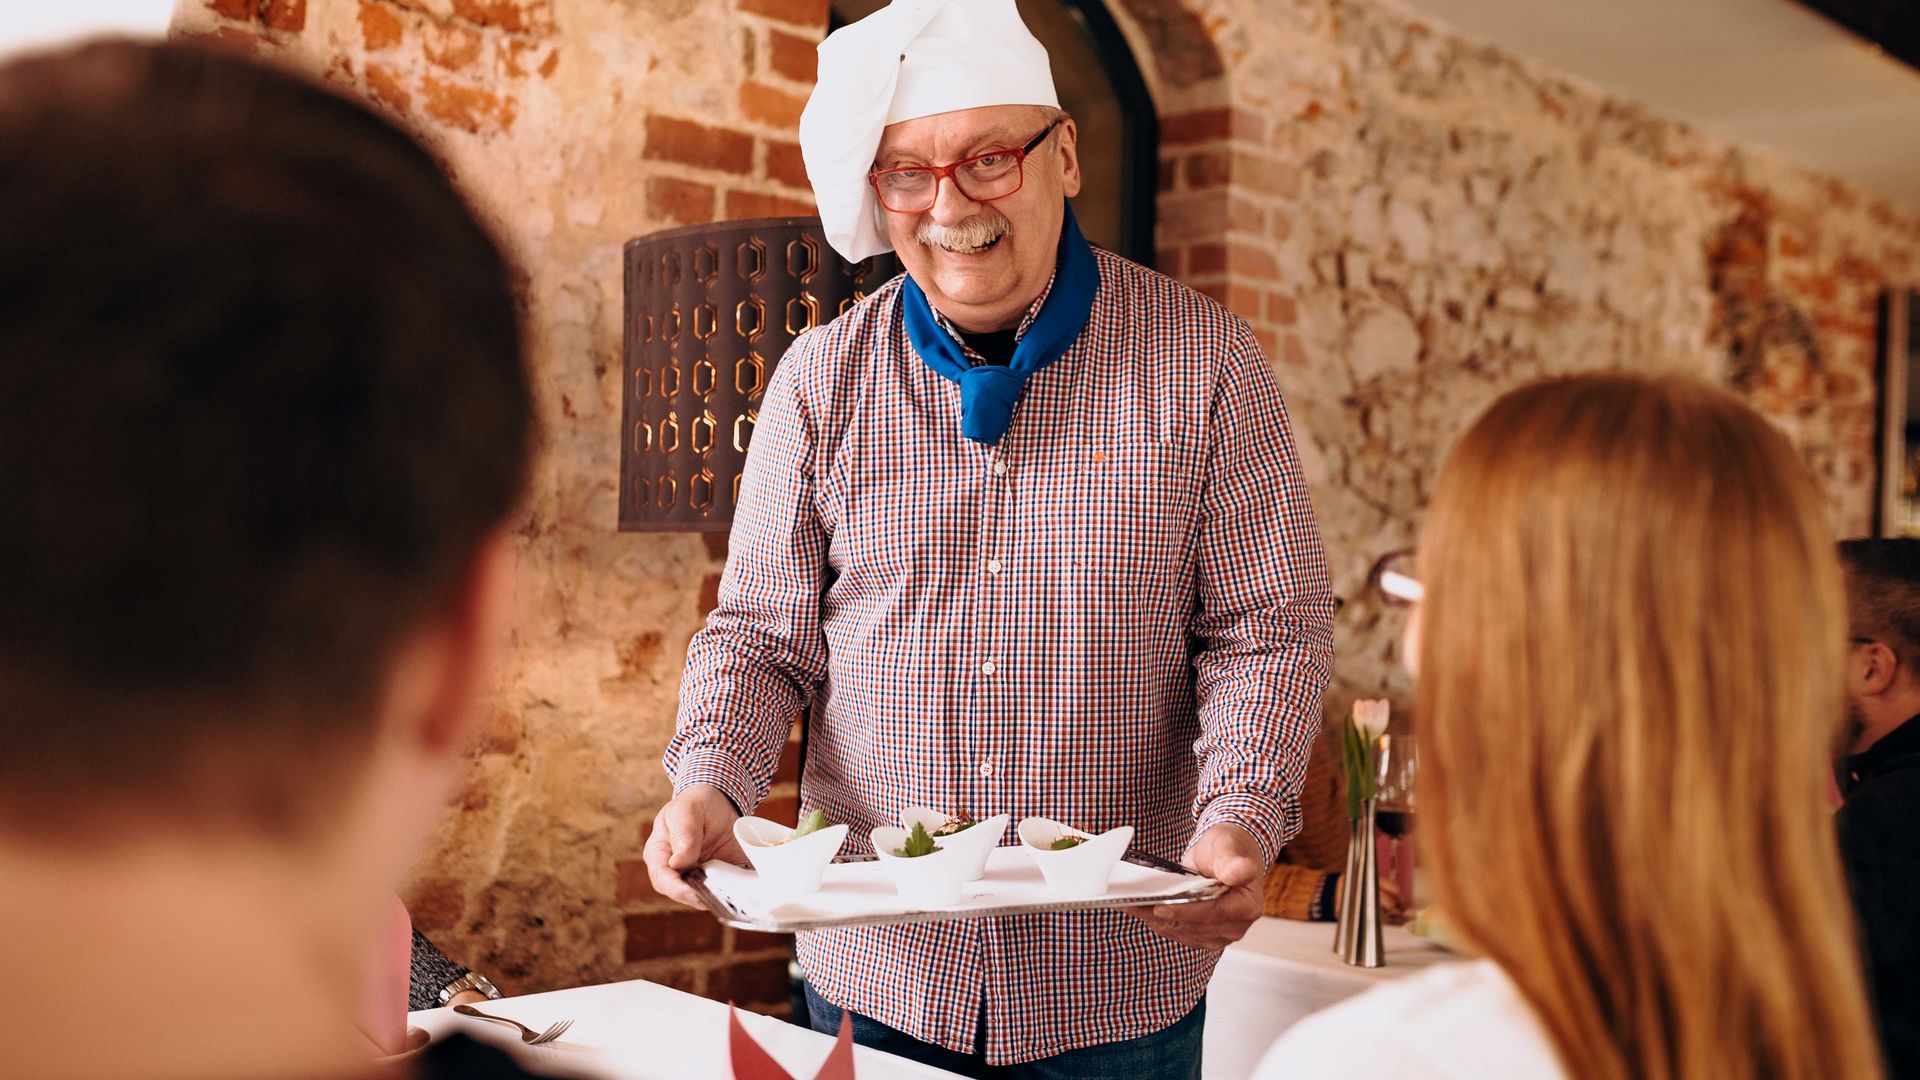 V radničním sklípku v Grimmě ukazuje průvodce a kuchař Frank Ziegra jednomu páru předkrmy z kuchyně během kulinářské prohlídky města Grimma, restaurace a kavárny